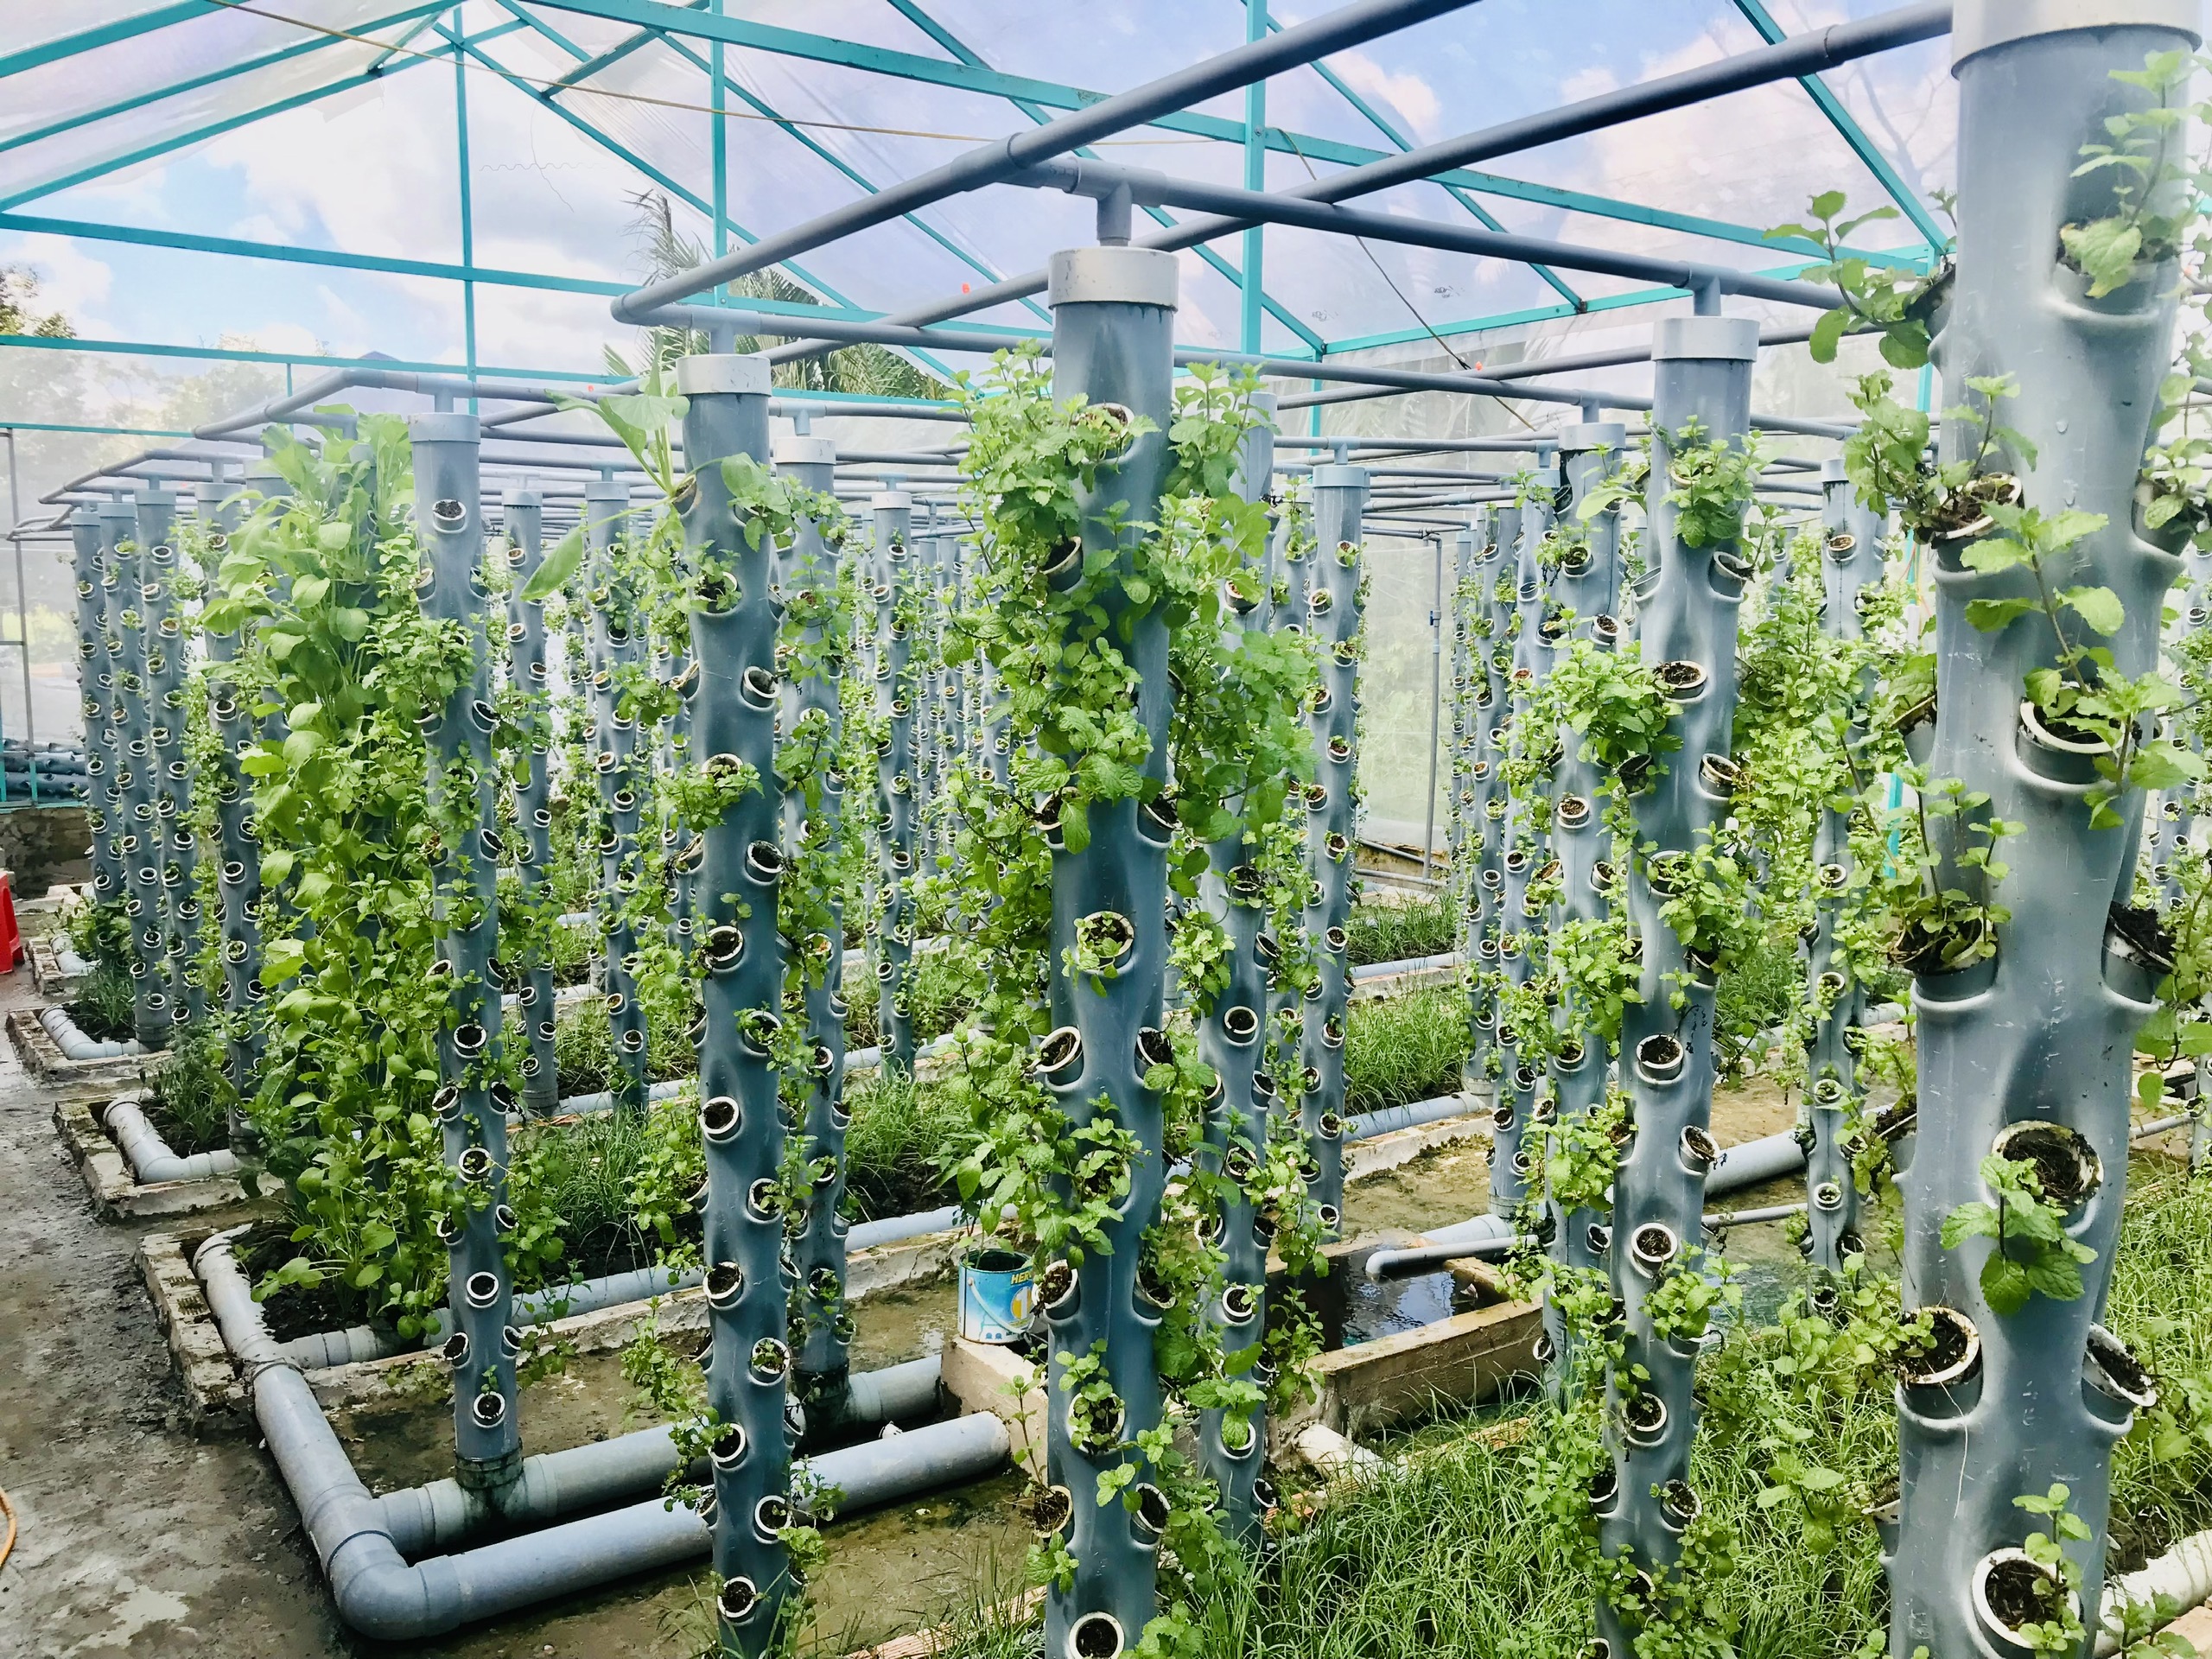 Thử nghiệm mô hình trồng rau thủy canh trên sân thượng ở Long An   baotintucvn